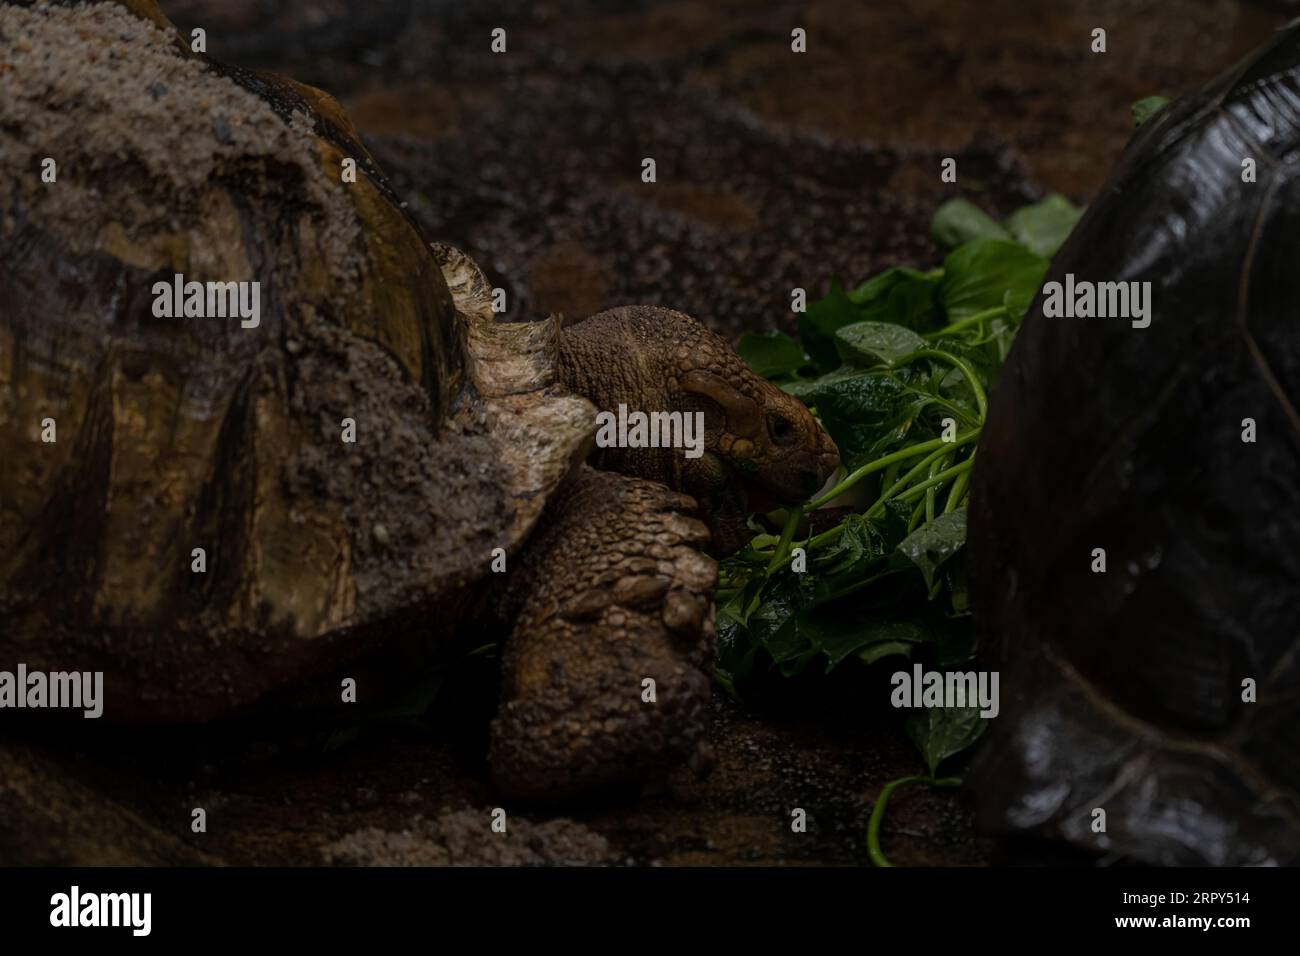 Zwei afrikanische Schildkröten, die während des Regens essen - Centrochelys sulcata, große Schildkröte aus afrikanischen Büschen, Wälder und Grasland, Langansee Stockfoto